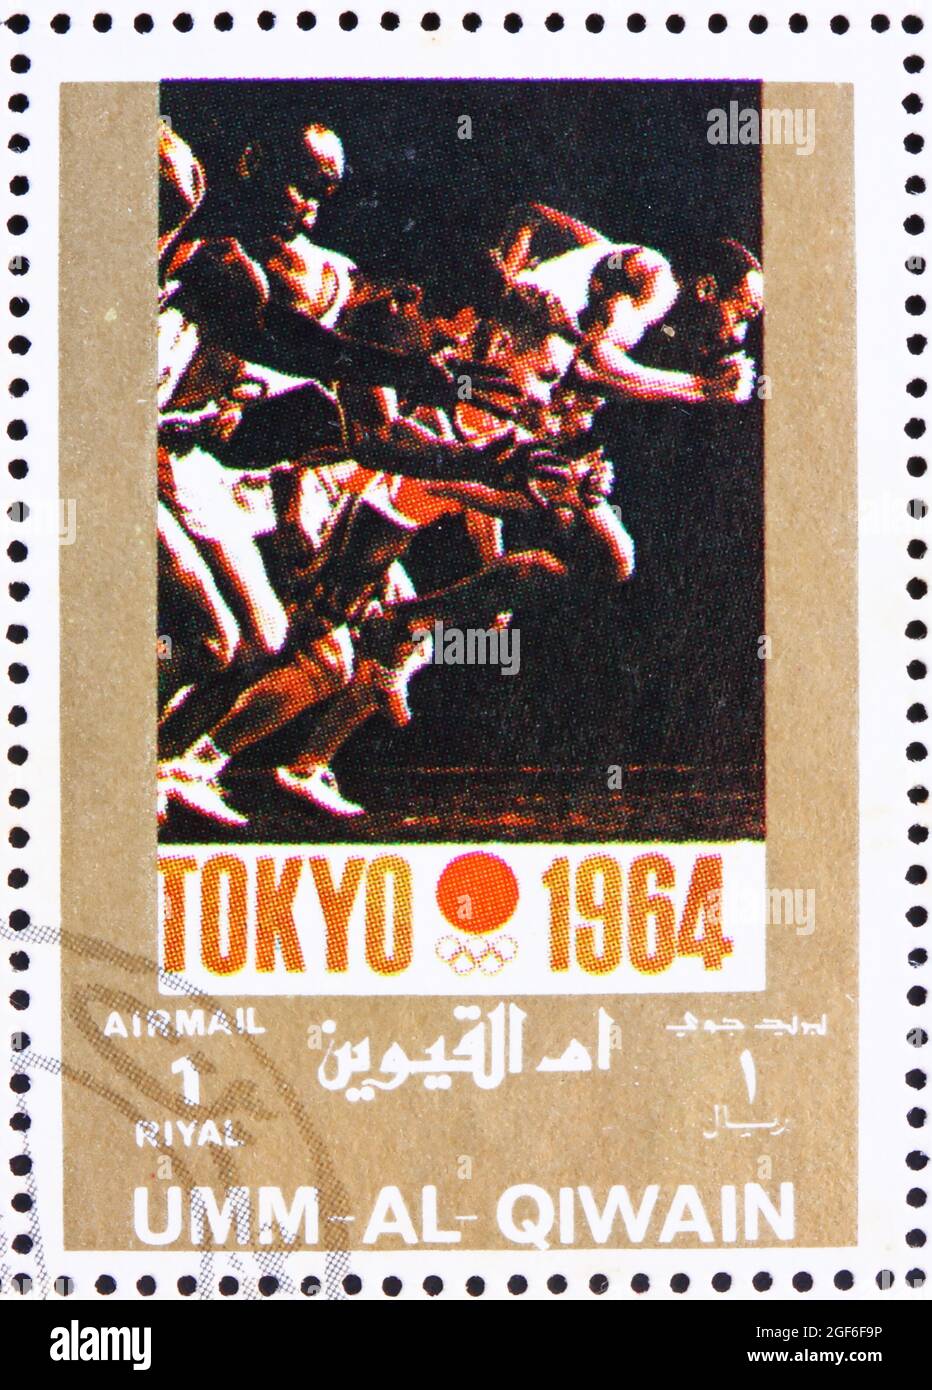 UMM AL-QUWAIN - ALREDEDOR de 1972: Un sello impreso en los espectáculos de Umm al-Quwain Tokio 1964, Japón, Juegos Olímpicos del pasado, alrededor de 1972 Foto de stock